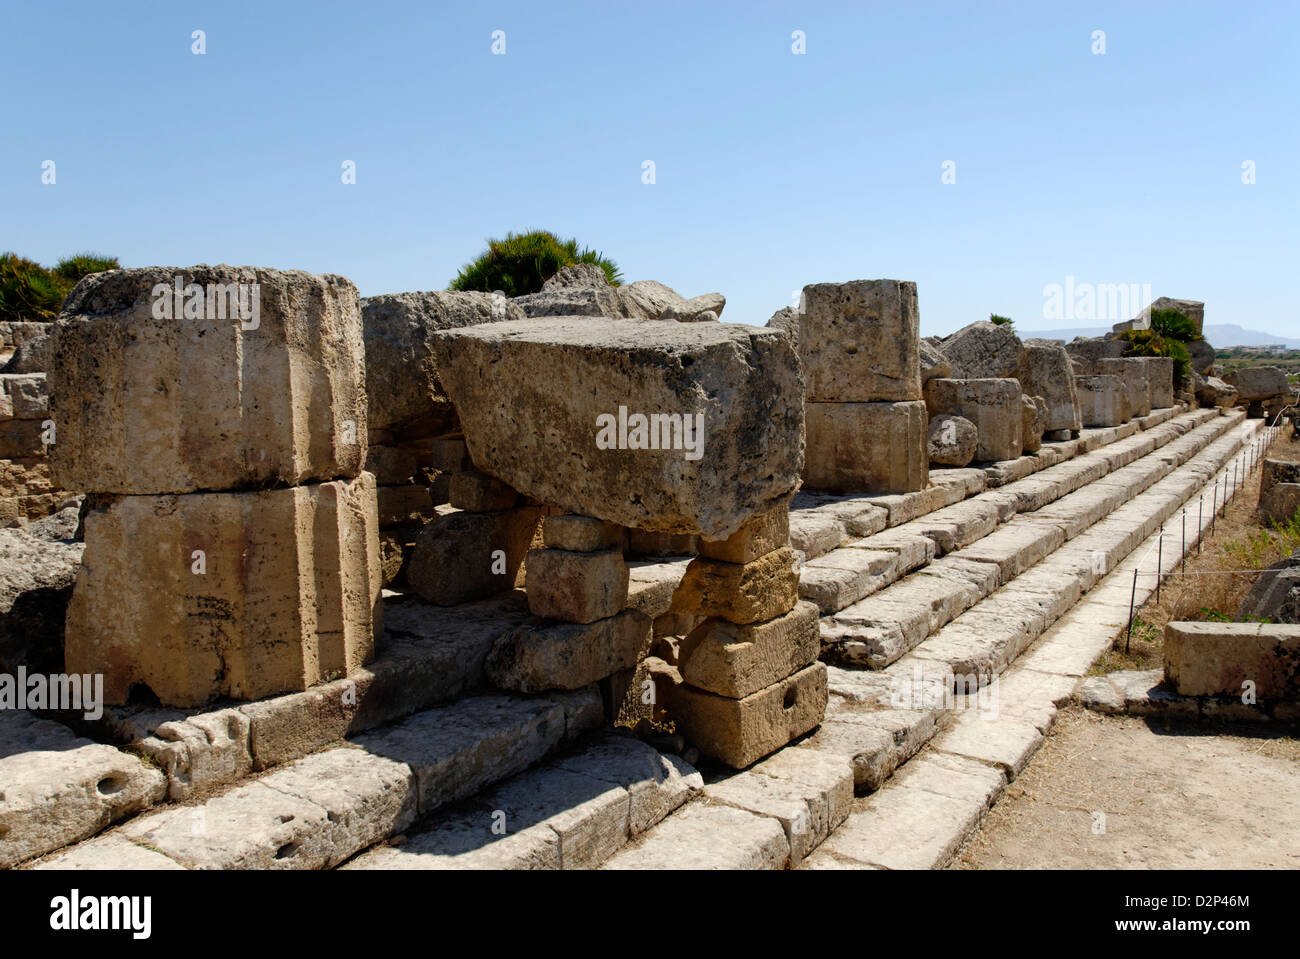 Selinunte Sizilien Italien. Die Ruinen des 6. Jahrhunderts v. Chr. Griechisch dorischen Tempel D, der griechischen Göttin Athene gewidmet. Stockfoto